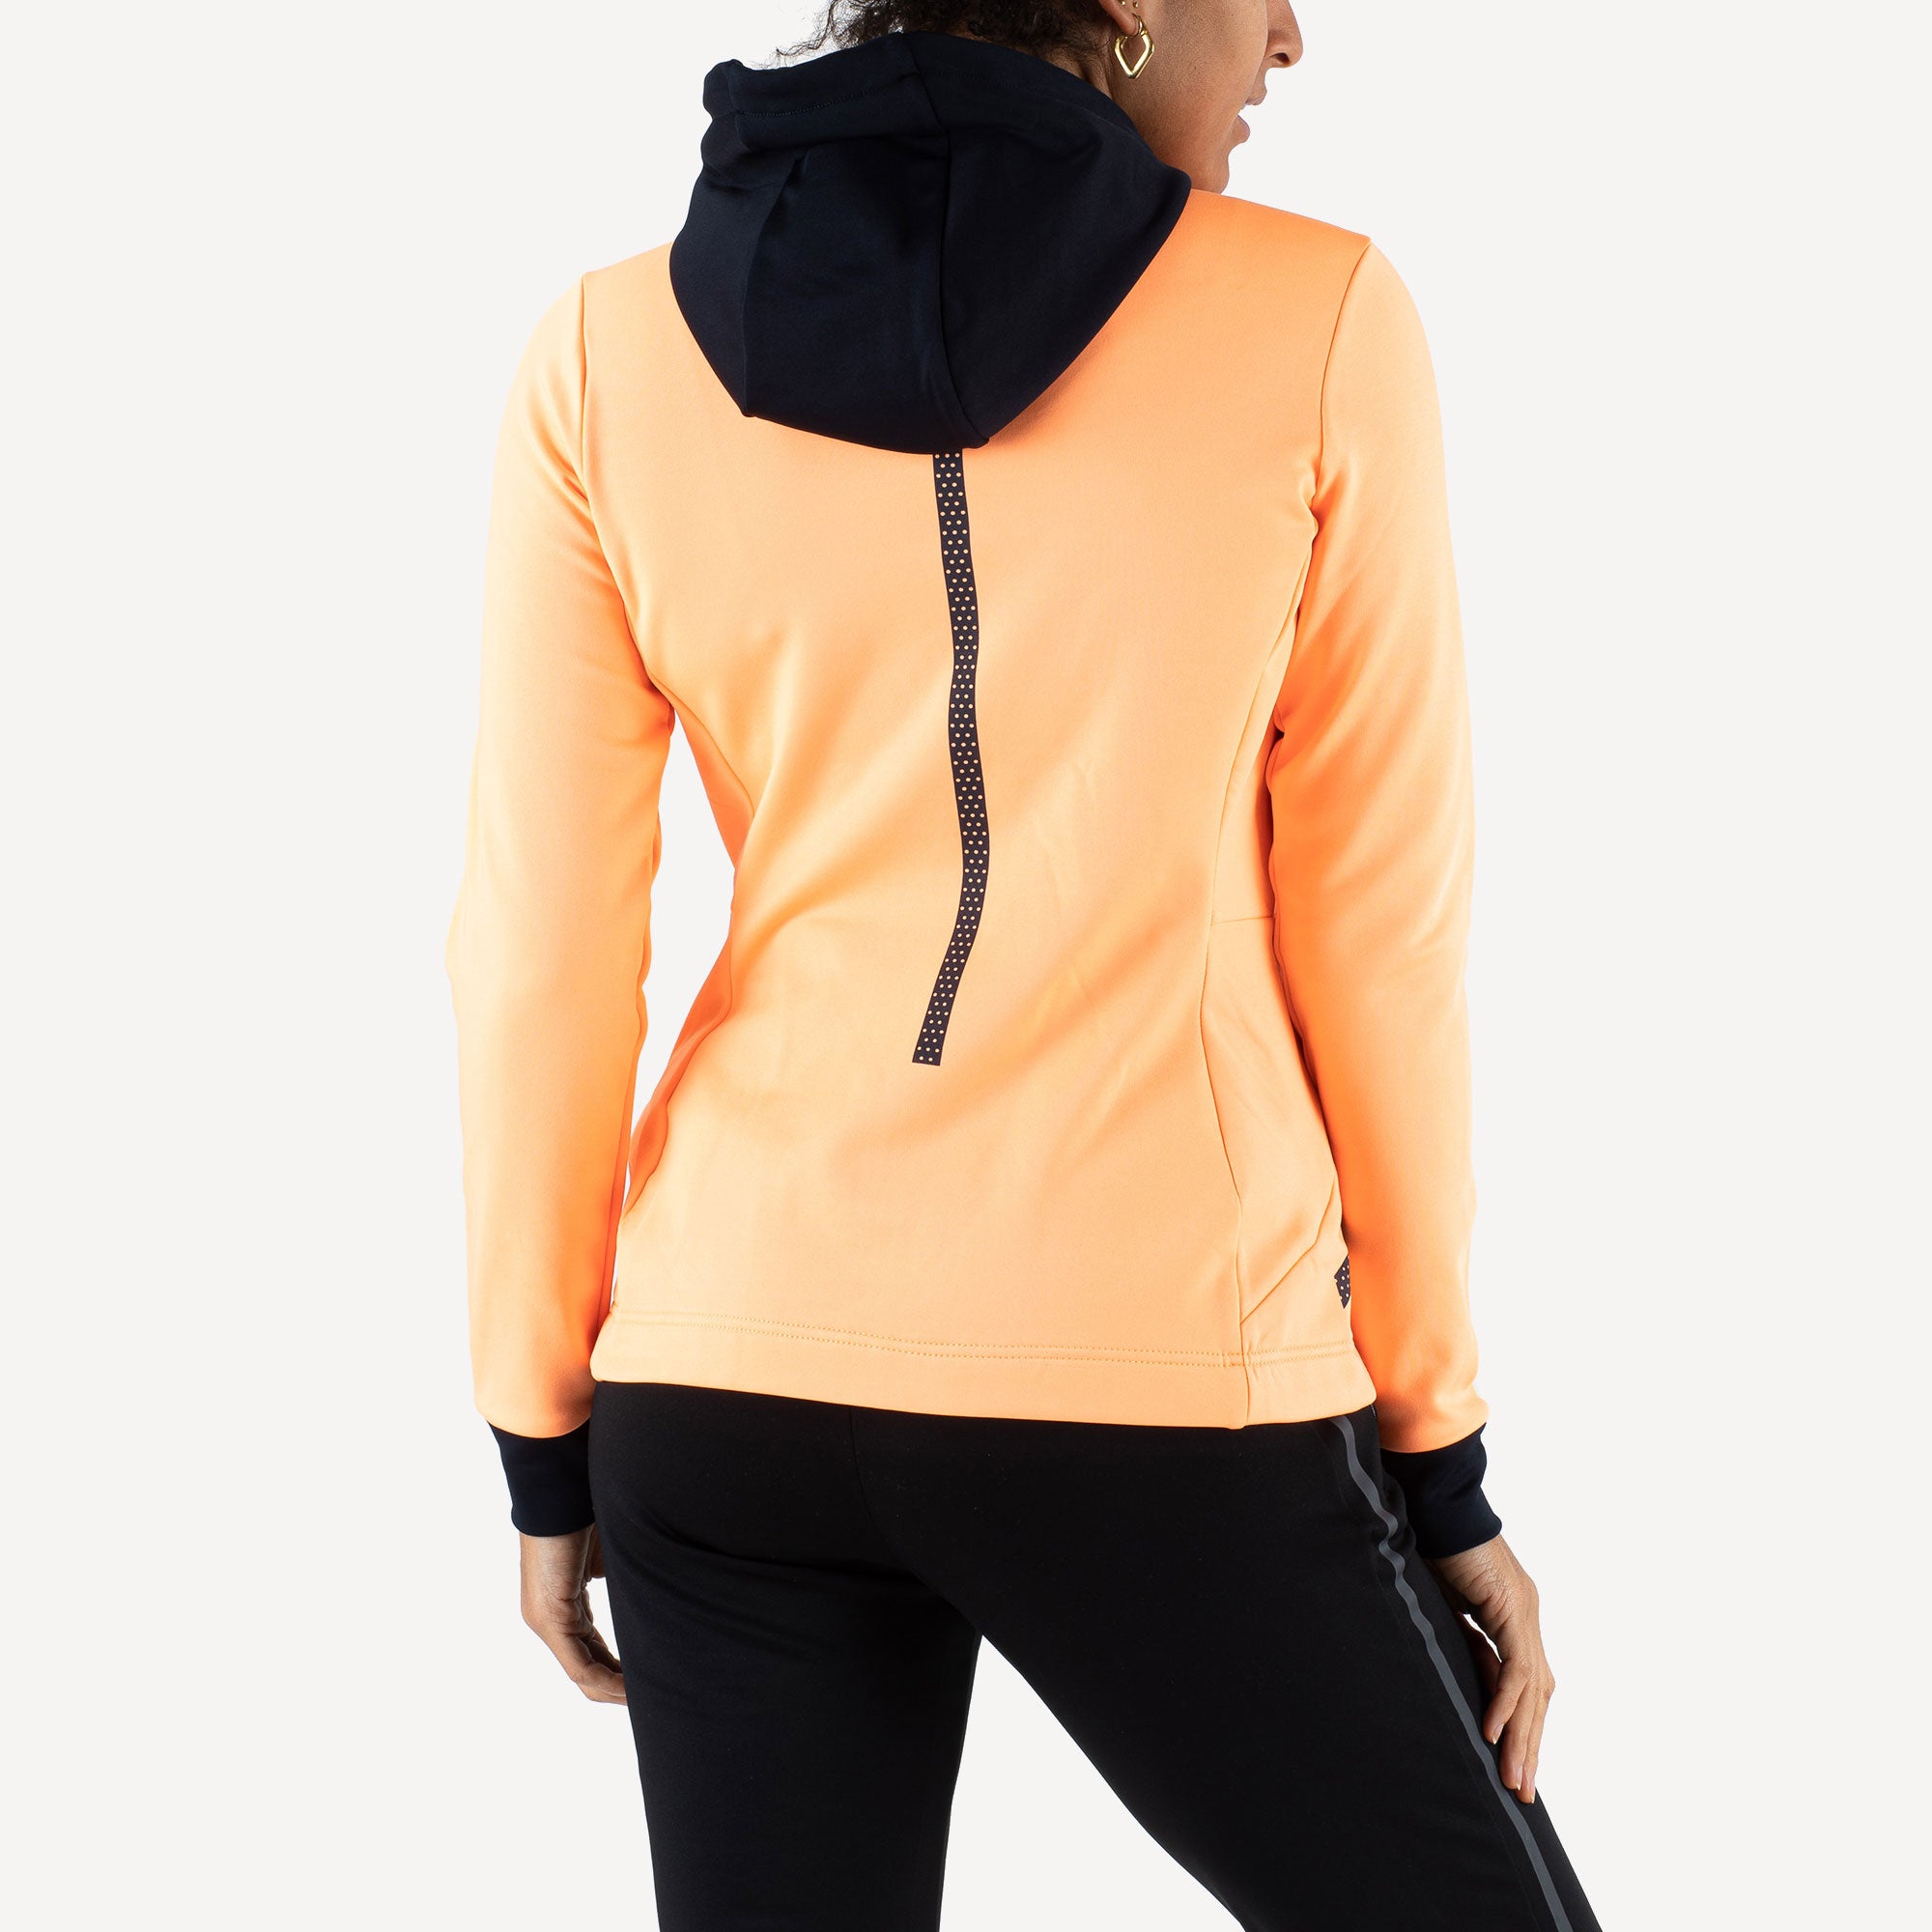 Sjeng Sports Giolla Women's Hooded Tennis Jacket Orange (2)